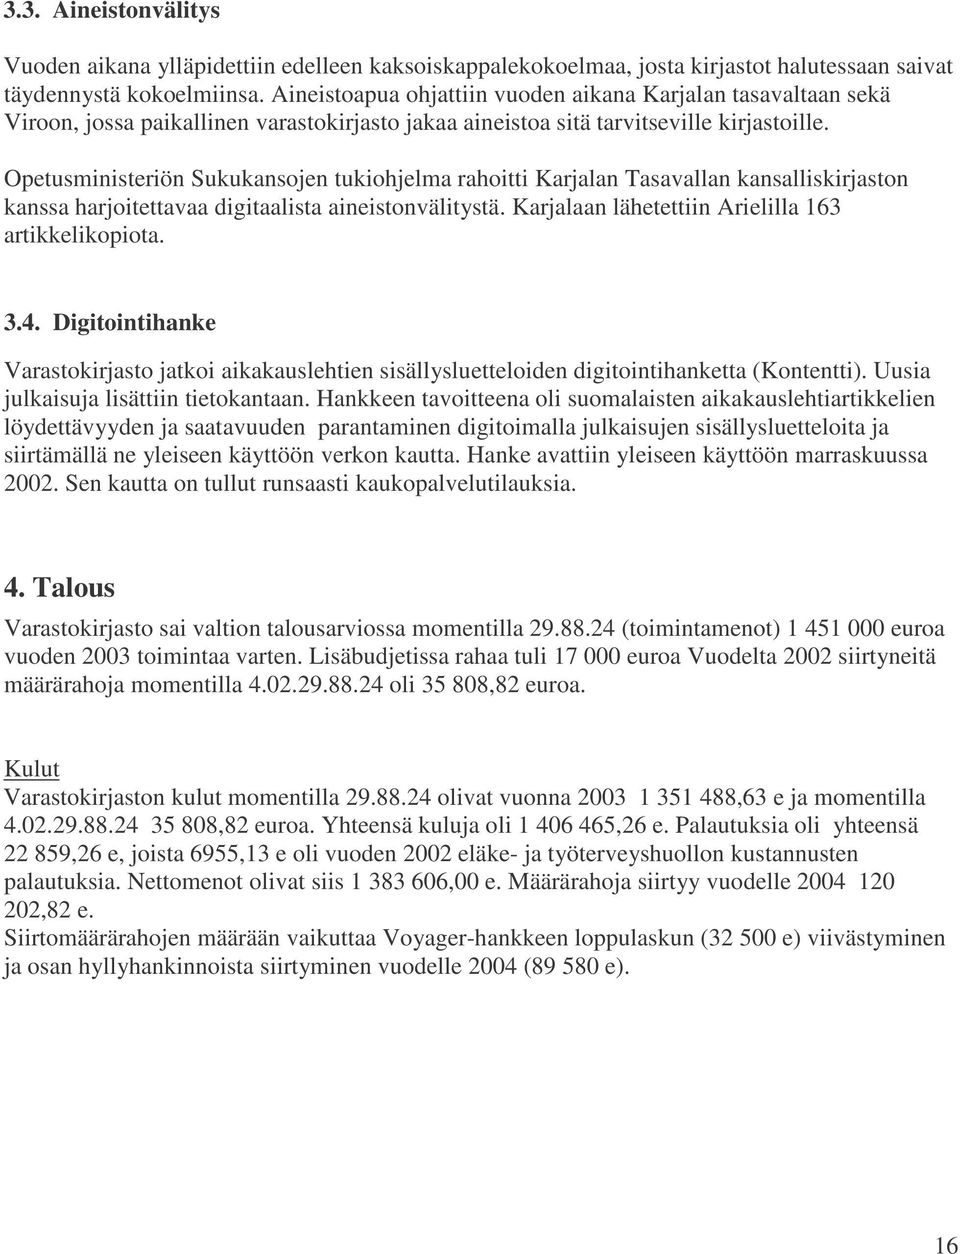 Opetusministeriön Sukukansojen tukiohjelma rahoitti Karjalan Tasavallan kansalliskirjaston kanssa harjoitettavaa digitaalista aineistonvälitystä. Karjalaan lähetettiin Arielilla 163 artikkelikopiota.